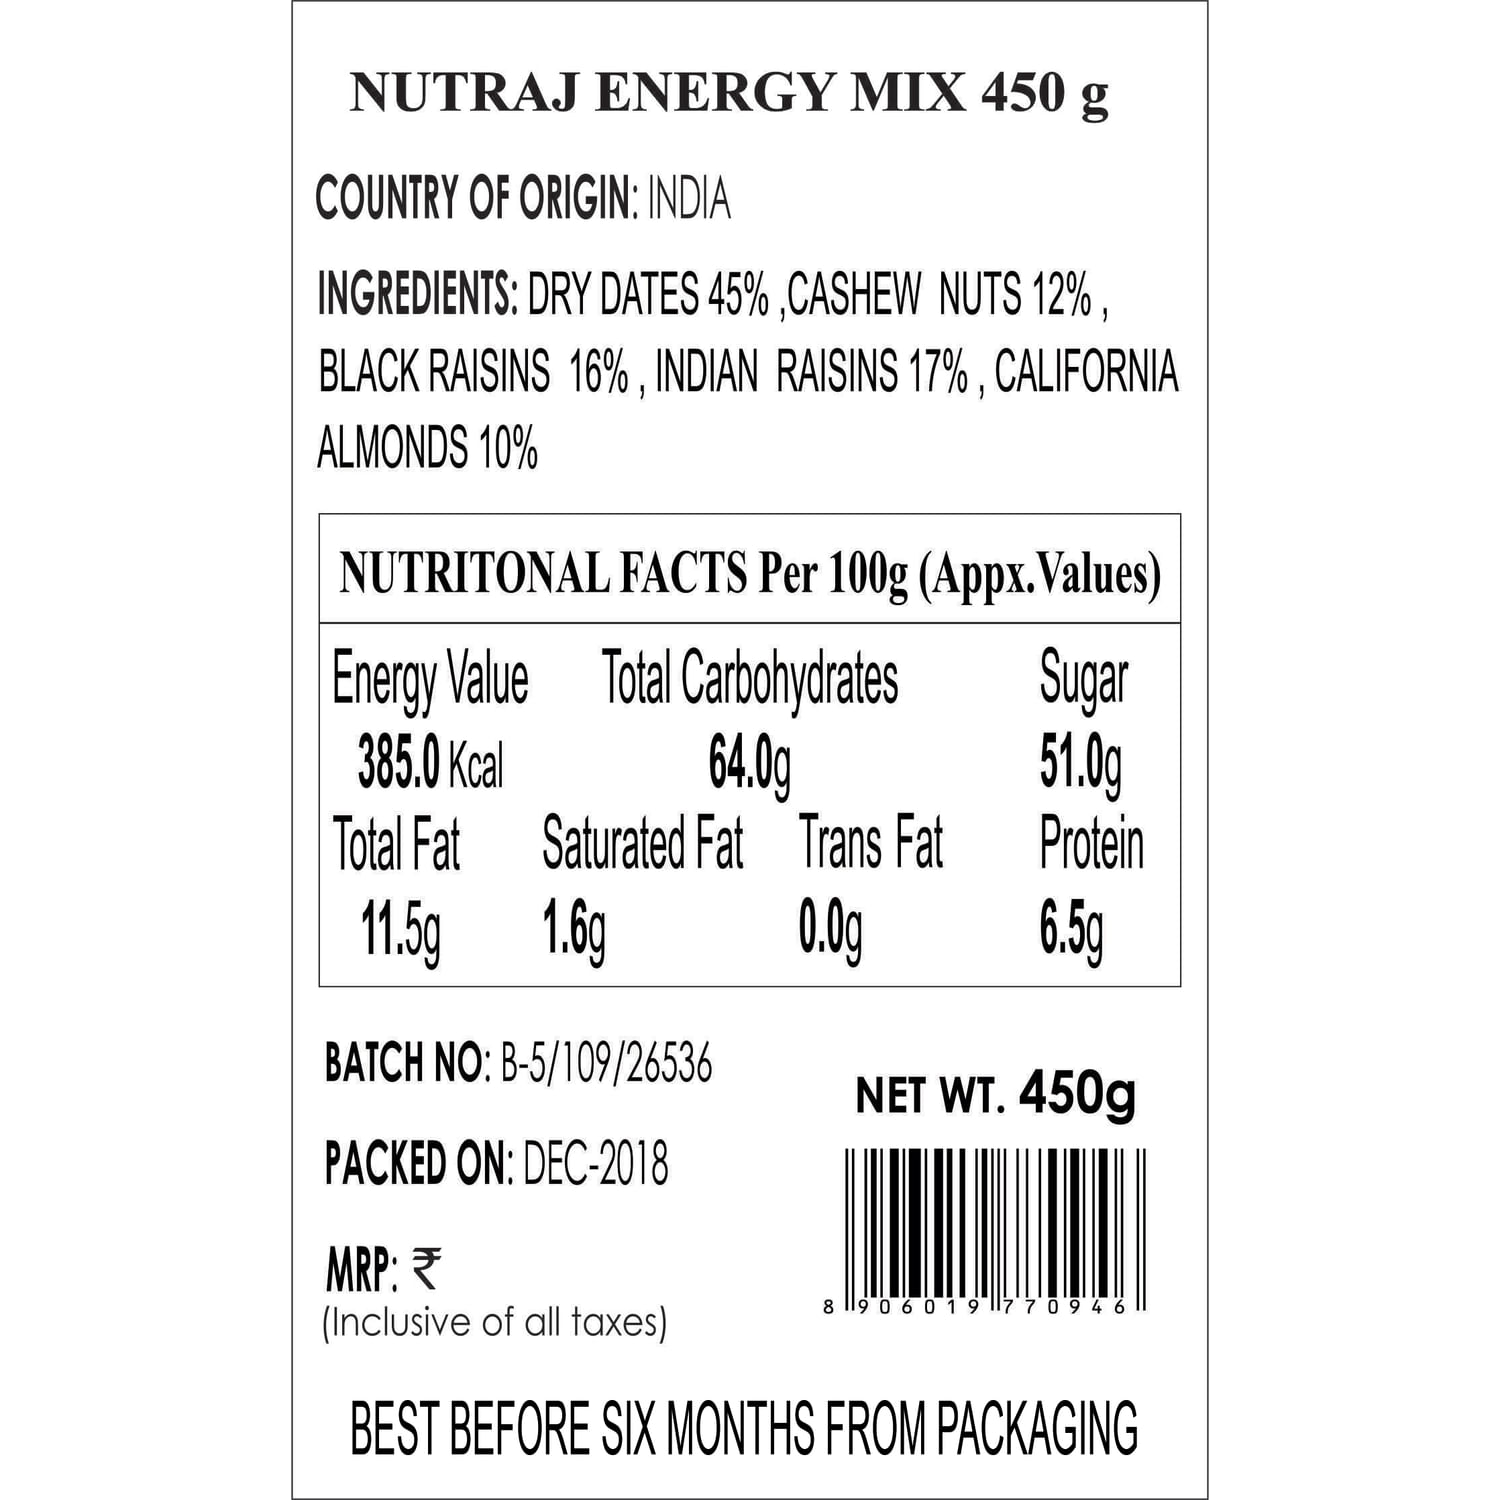 Nutraj Energy Mix 450g